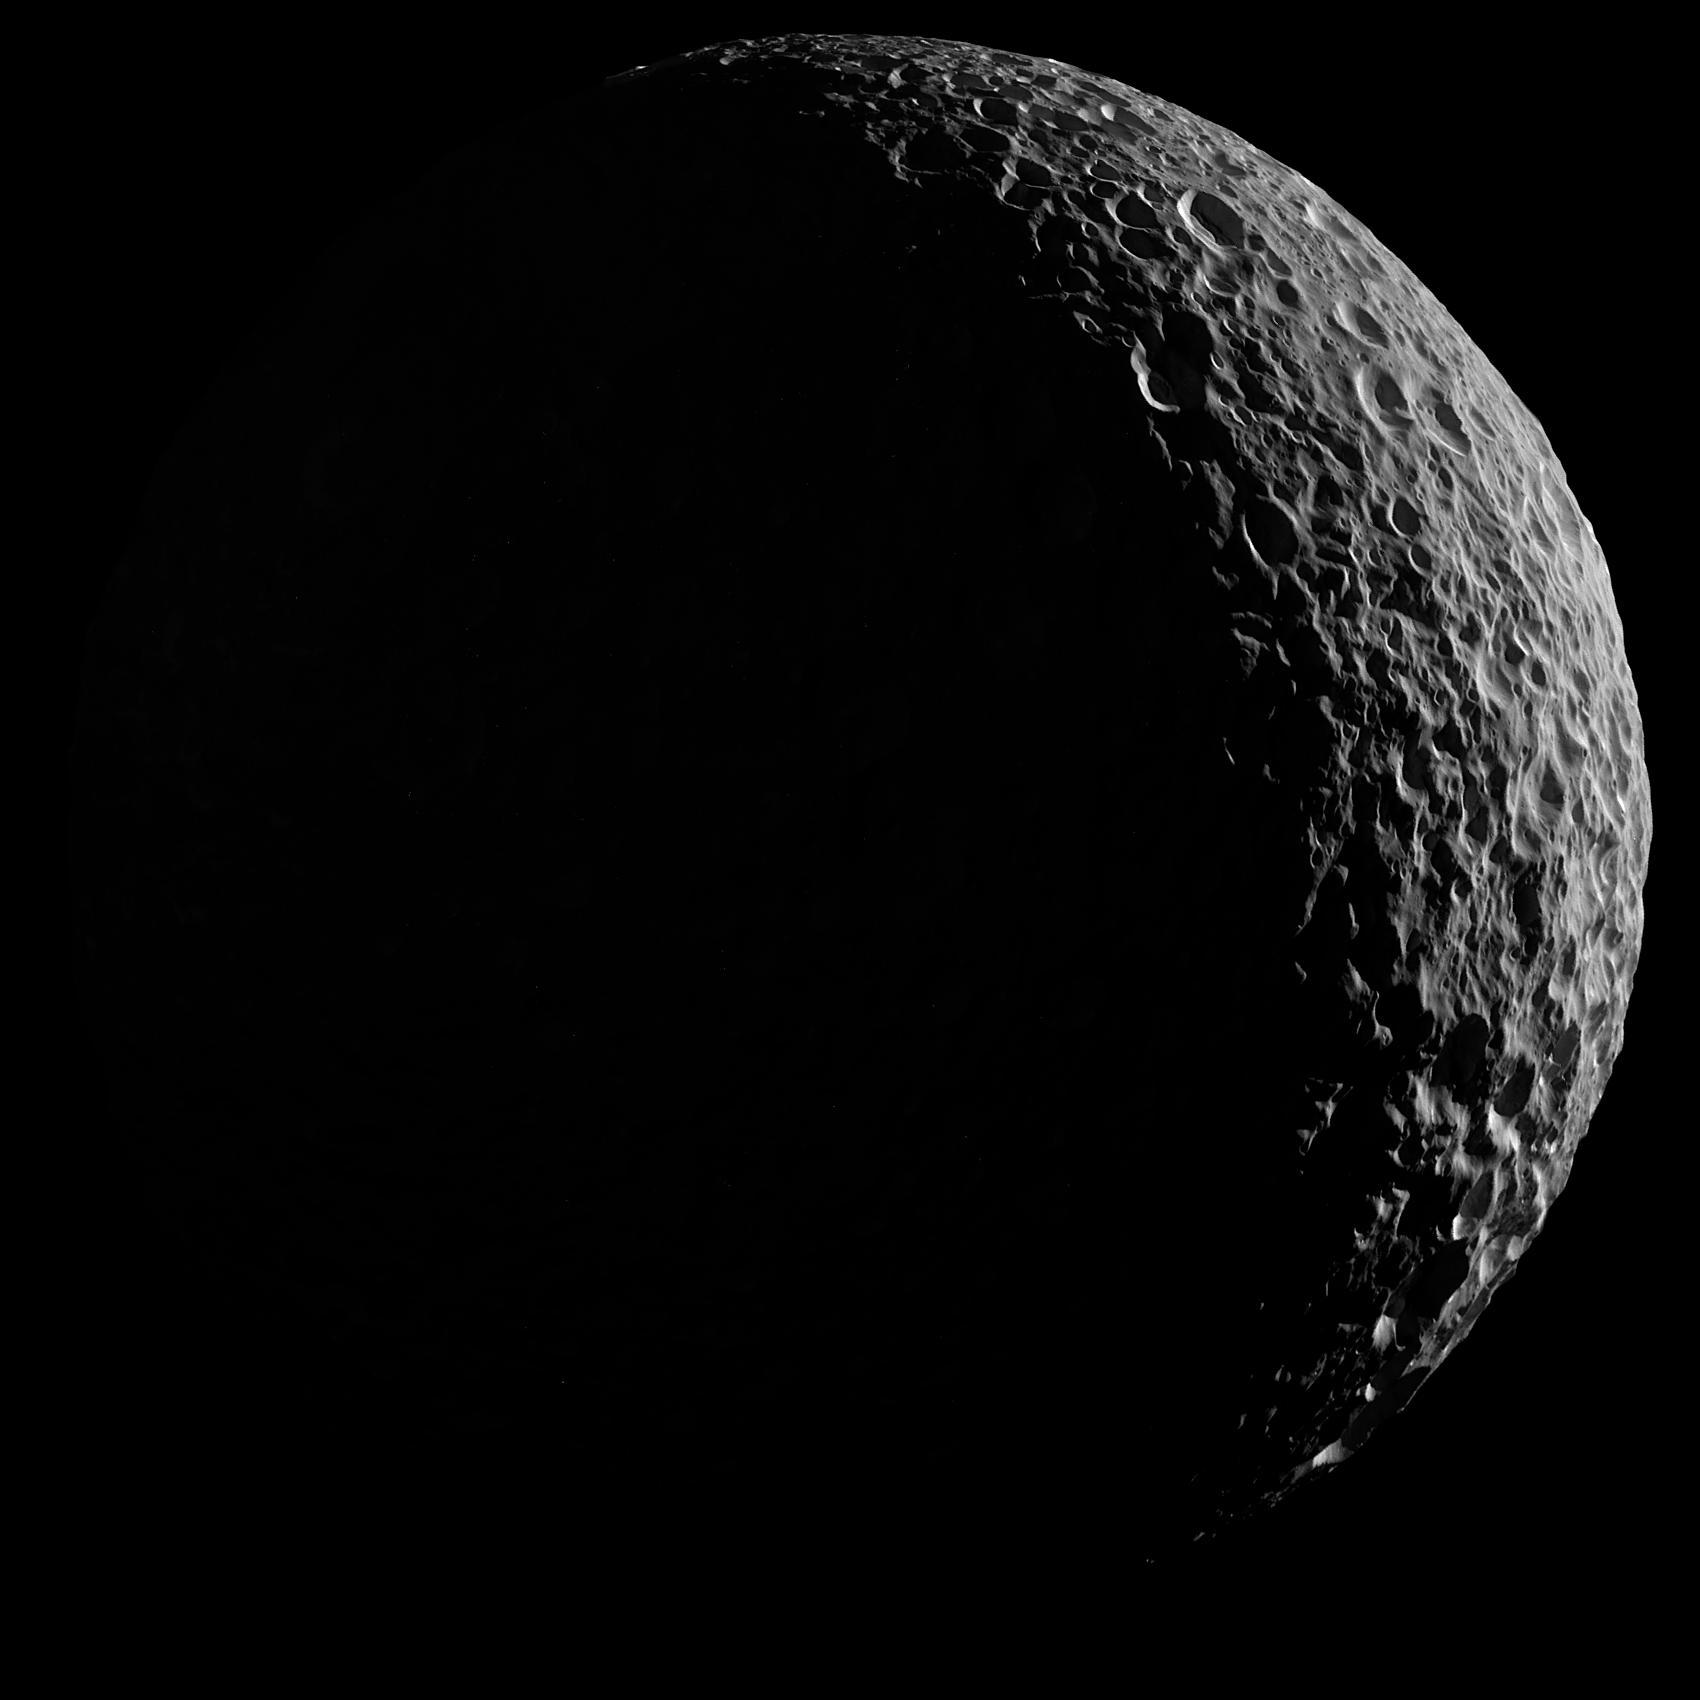 صورة لميماس قمر زحل يظهر فيها كهلالٍ مليءٍ بالفوّهات.